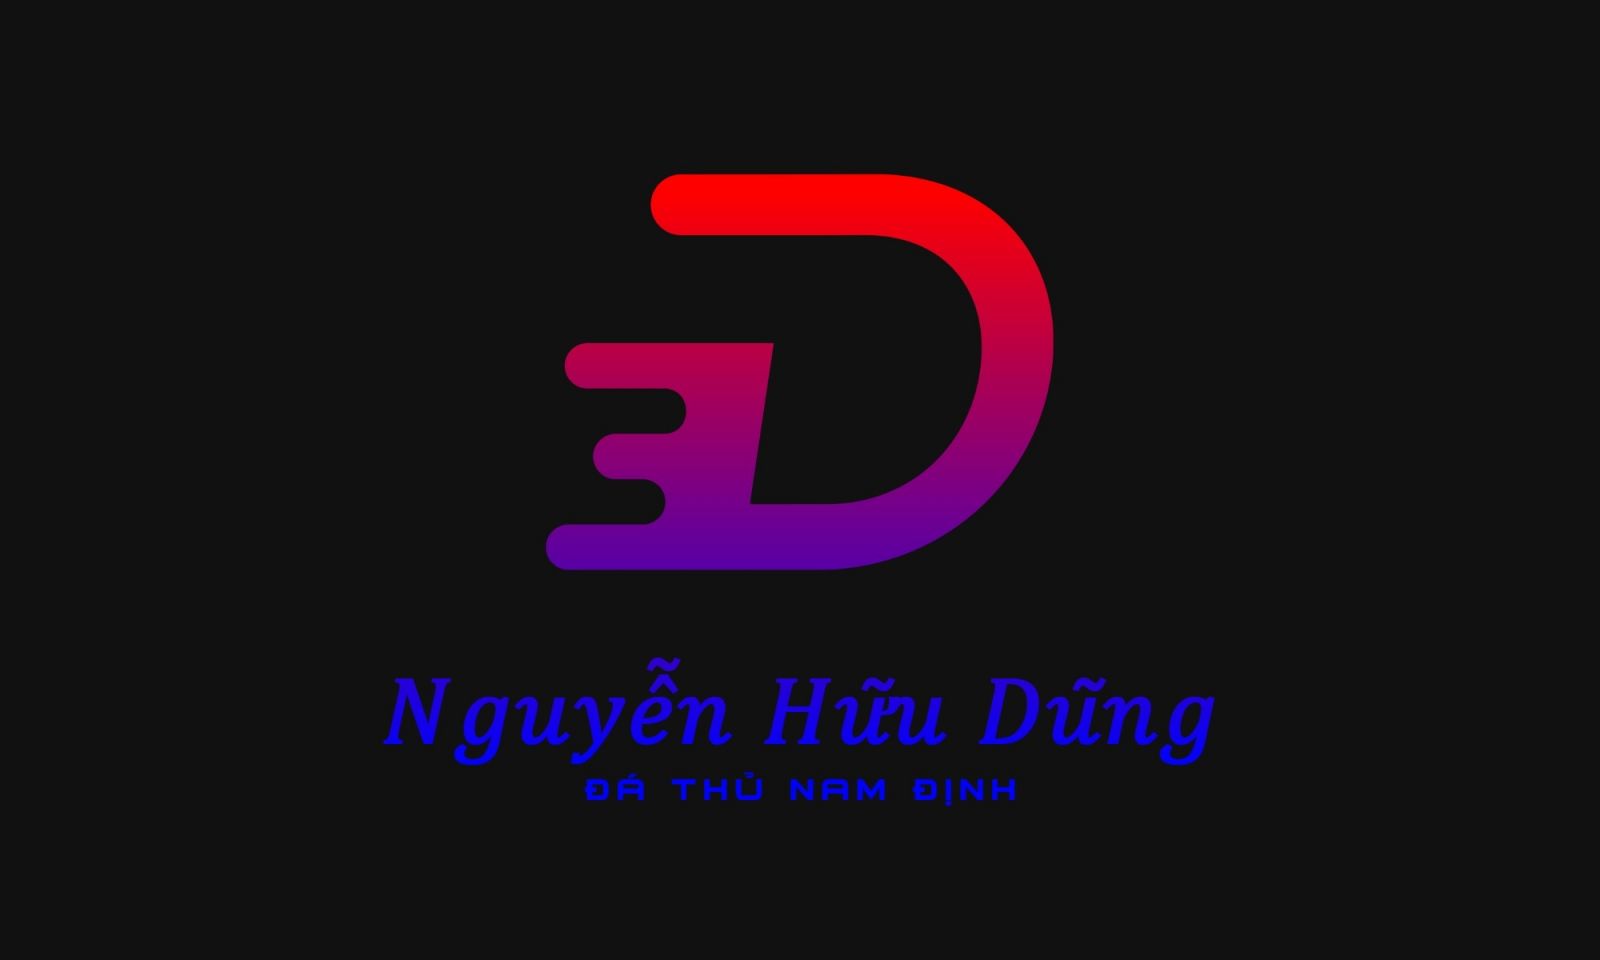 Nguyễn Hữu Dũng